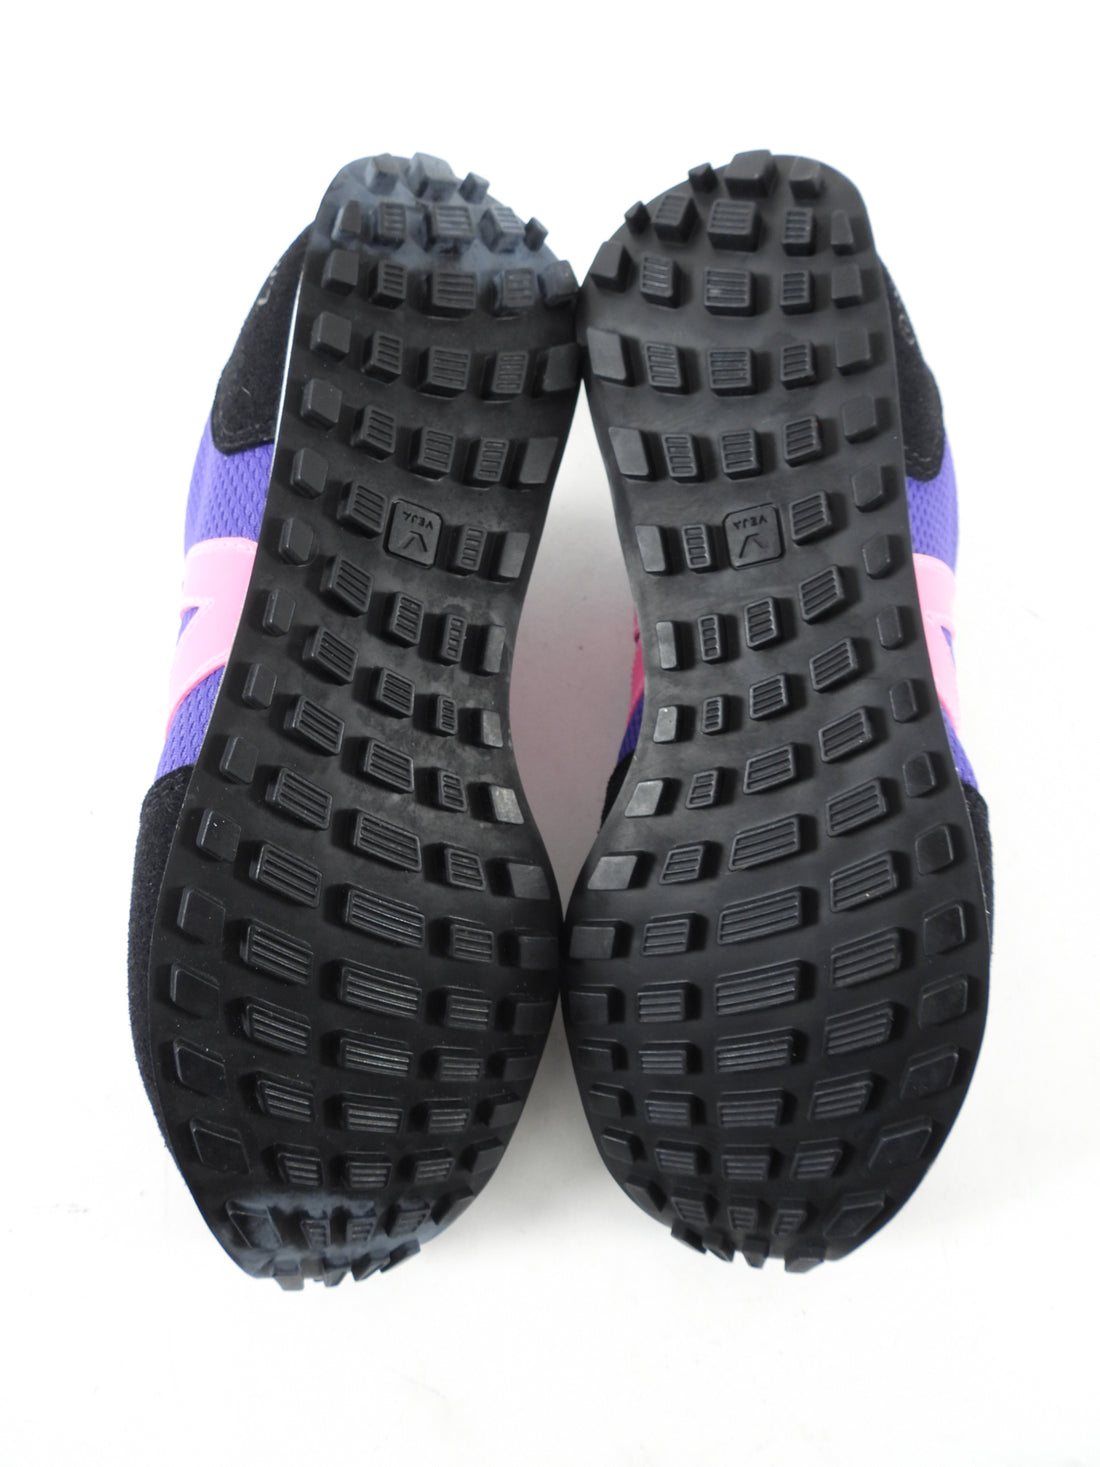 Veja Sneakers - purple, black, pink - 7